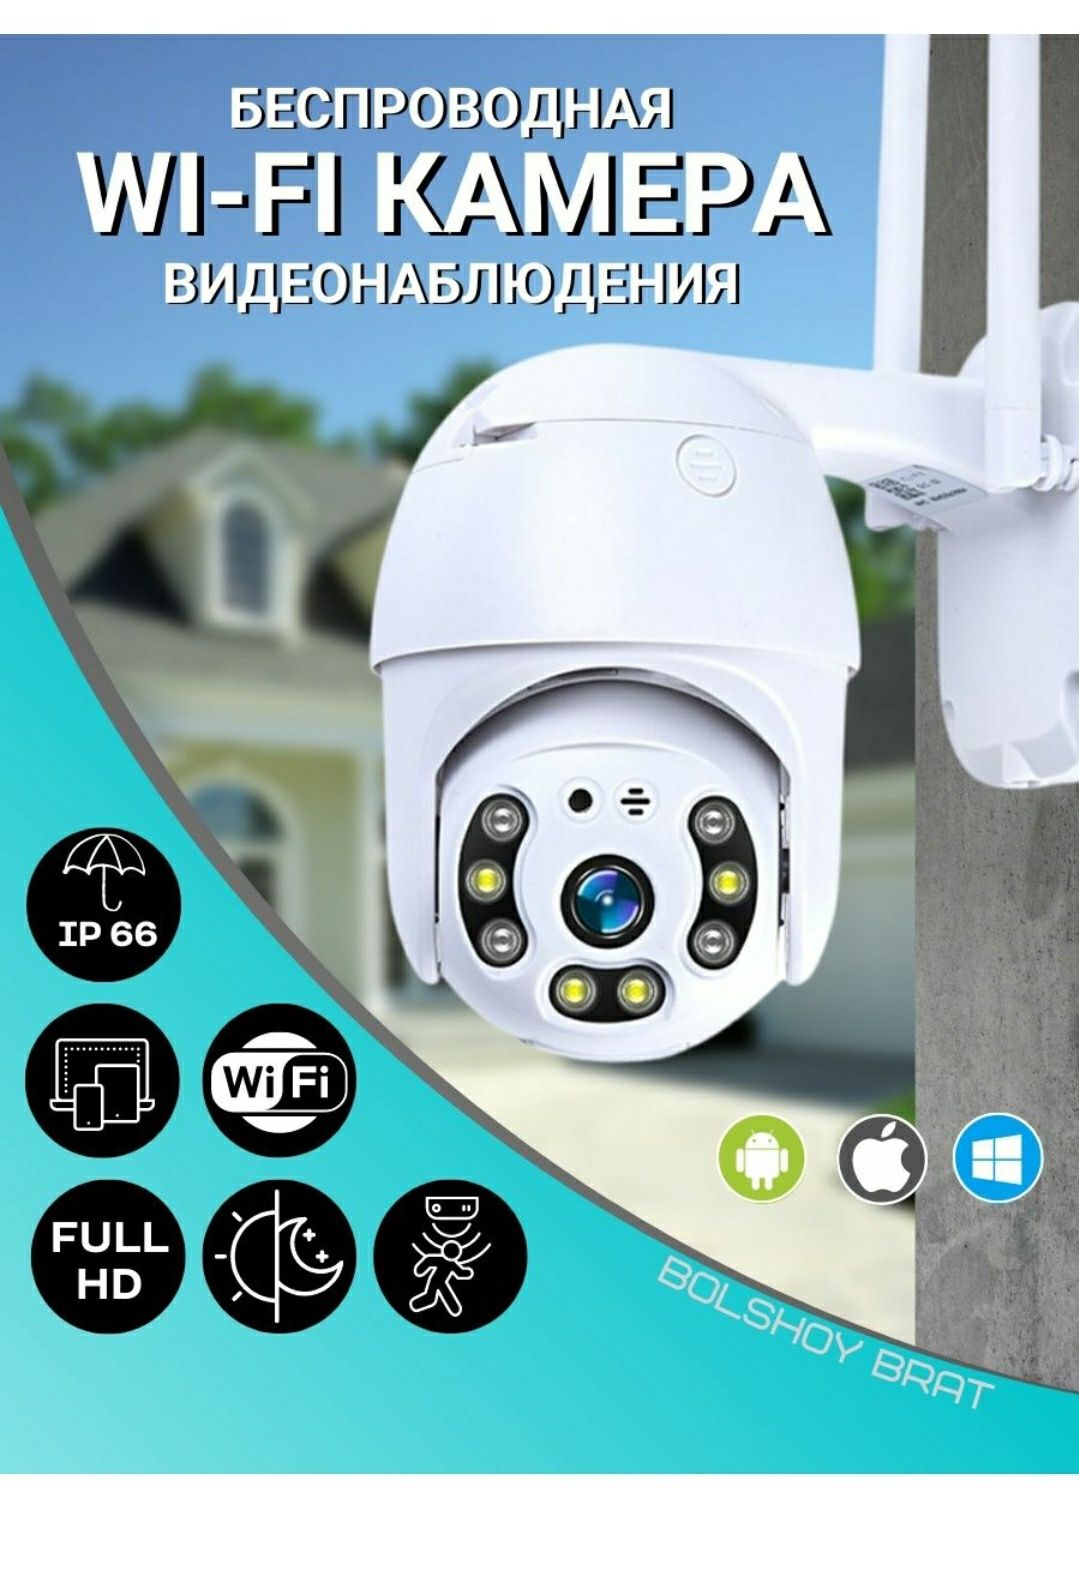 Wifi kamera с просмотром по телефону